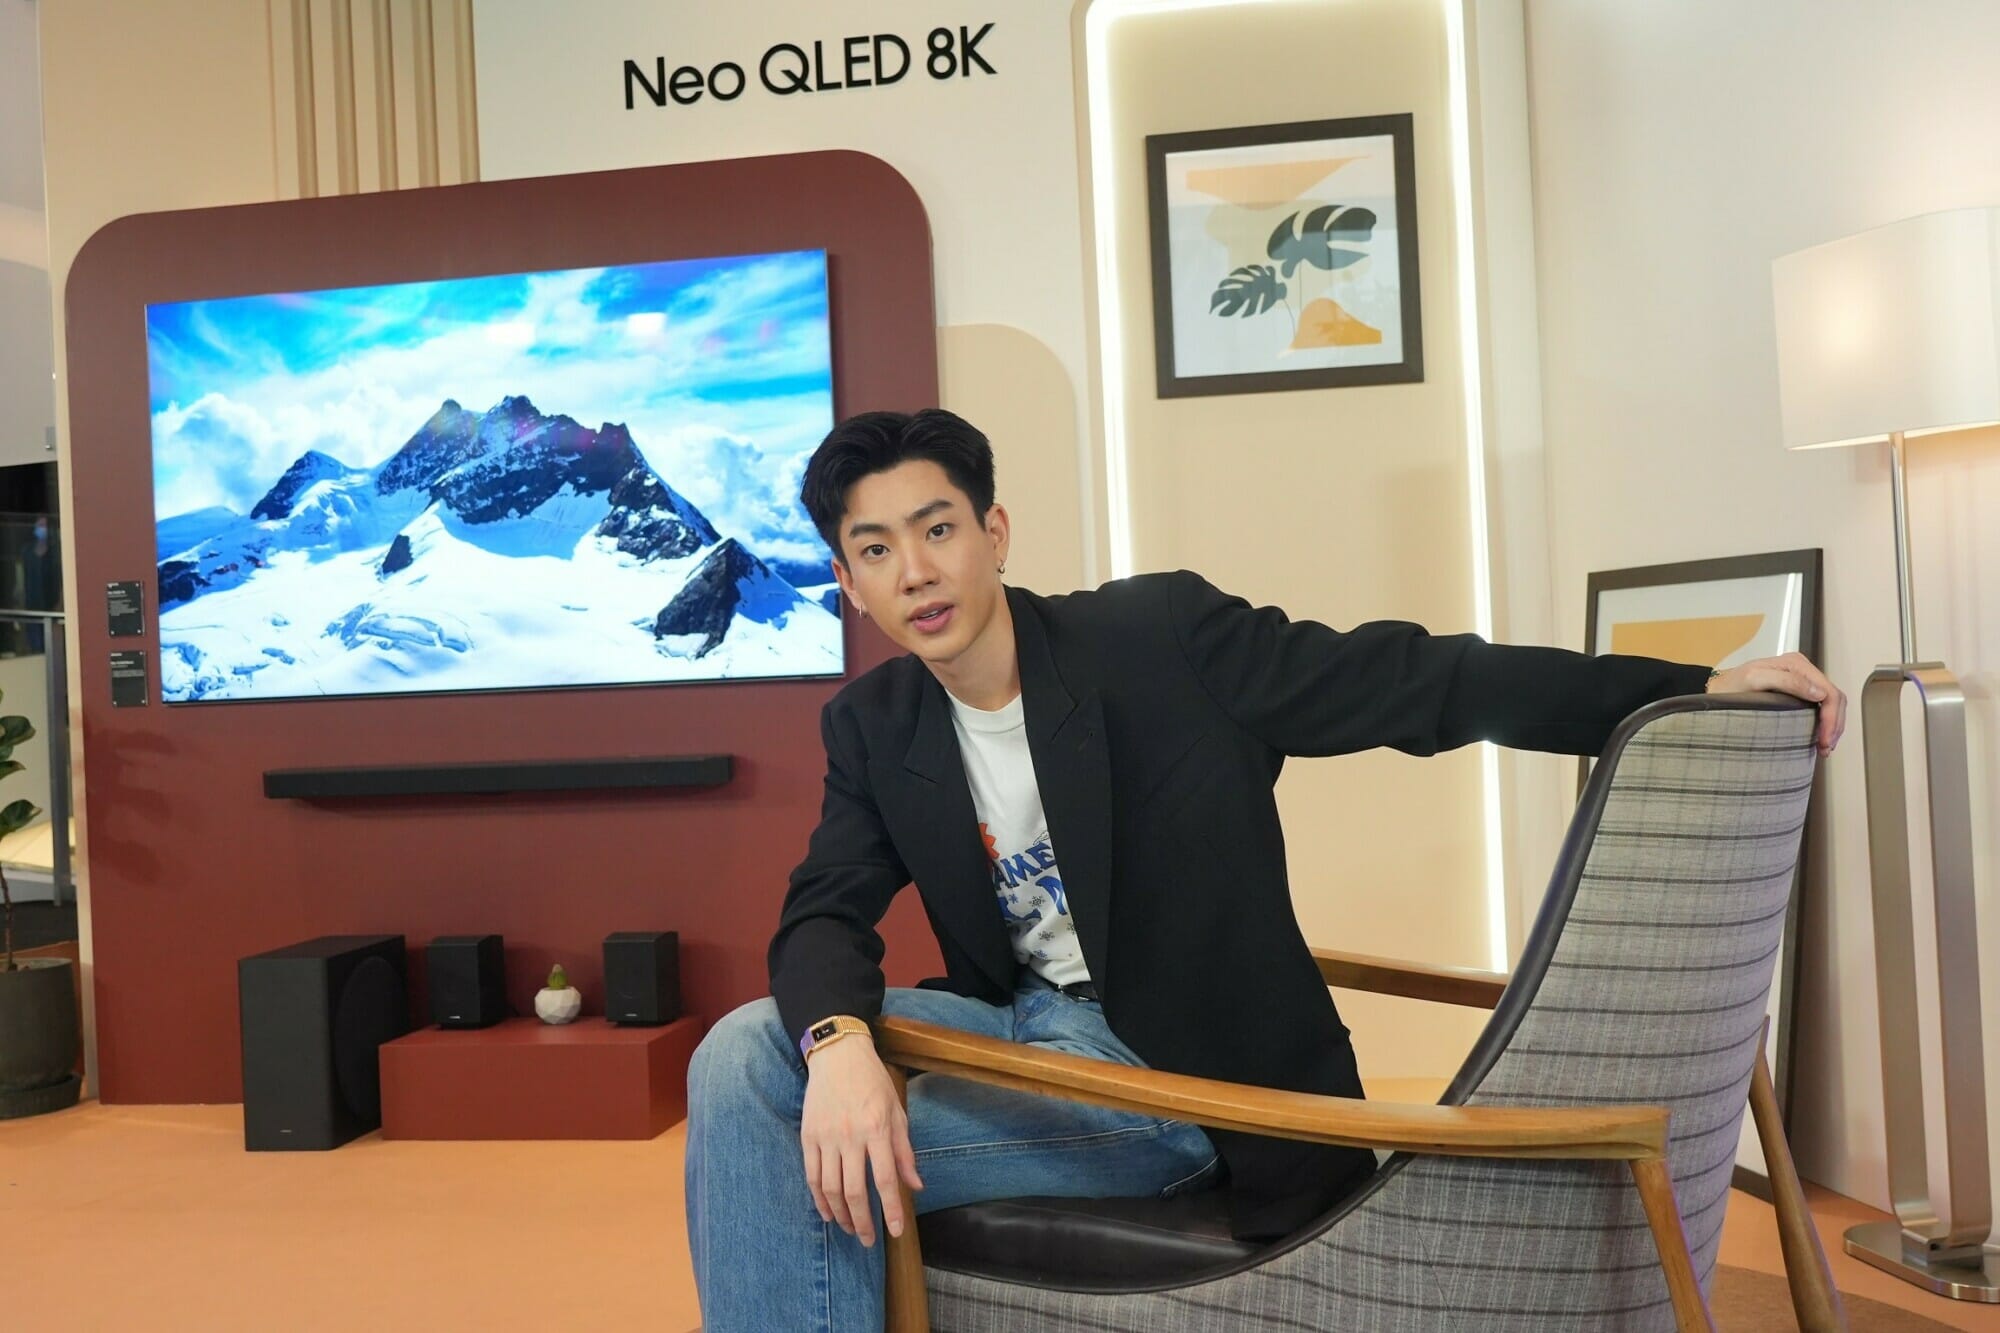 ซัมซุงเผยโฉมพรีเมียมไลน์อัพ Neo QLED 8K แห่งปี 2022 ชูจุดเด่นนวัตกรรมที่เป็นมากกว่าทีวี คมชัดไร้ขอบเขต อีกระดับของความสมบูรณ์แบบ 5